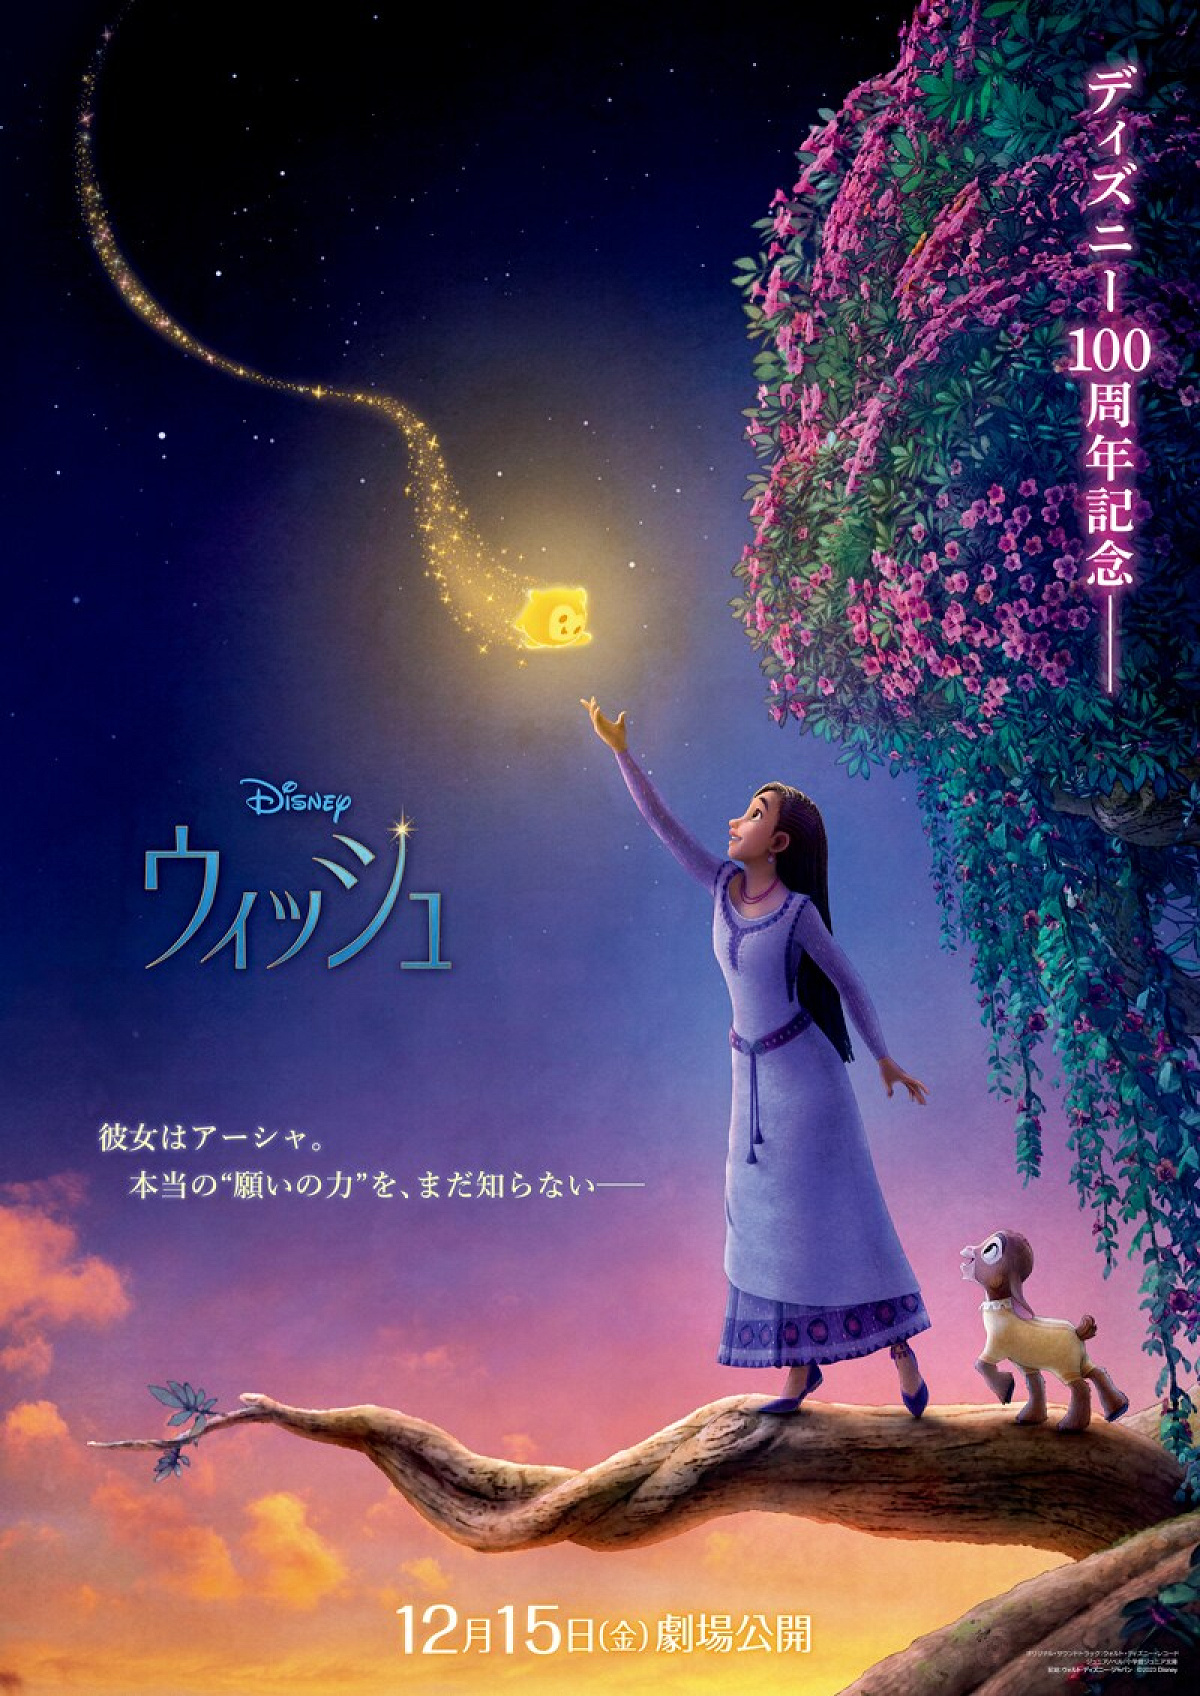 映画『ウィッシュ』の日本版ティザーポスター